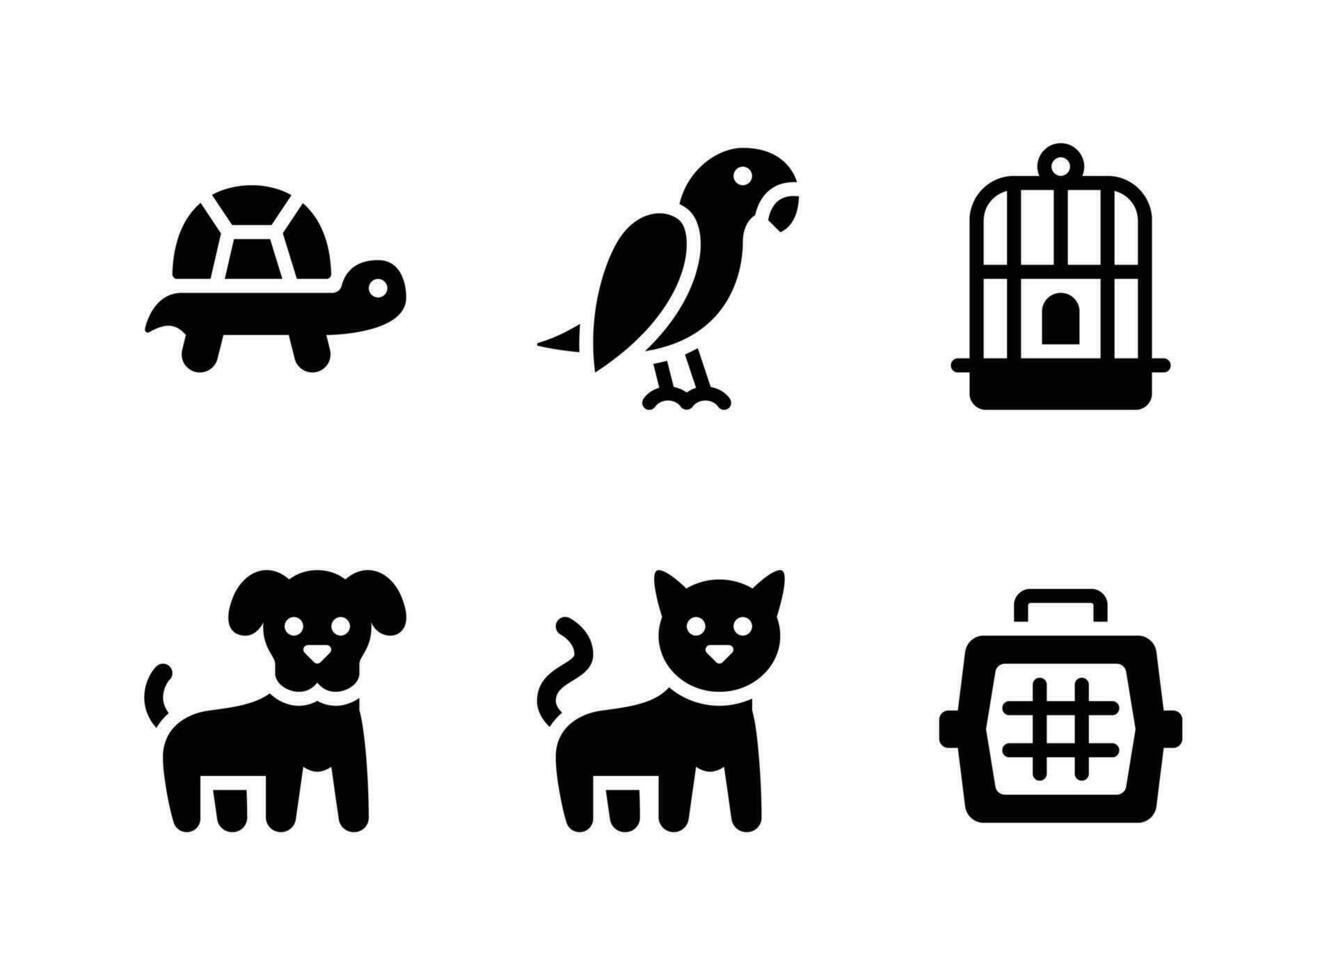 semplice impostato di animali domestici negozio vettore solido icone